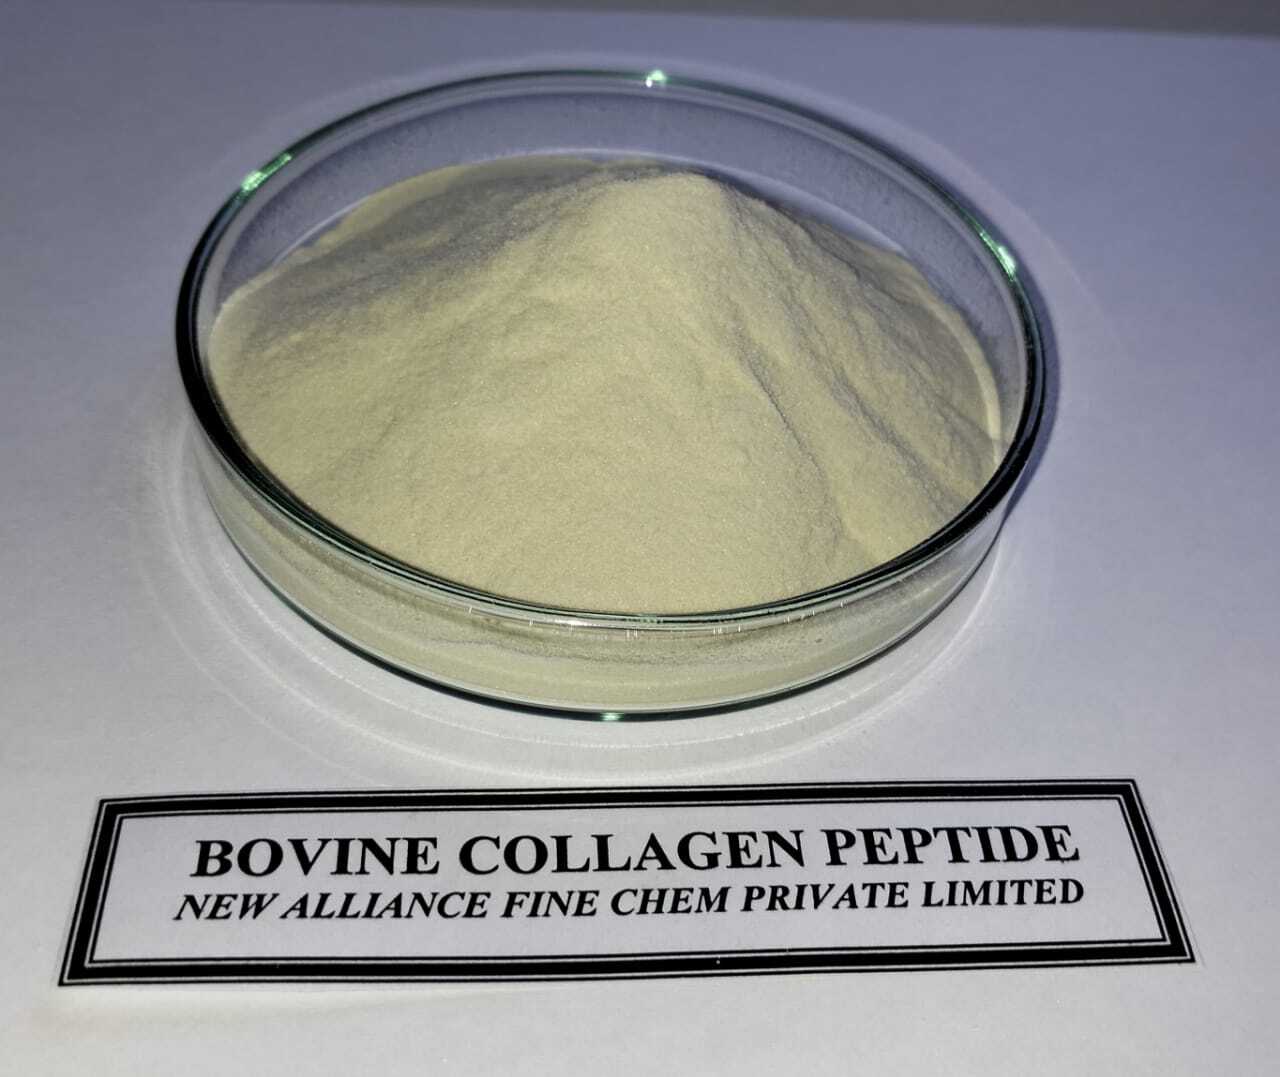 Bovine Collagen Peptide